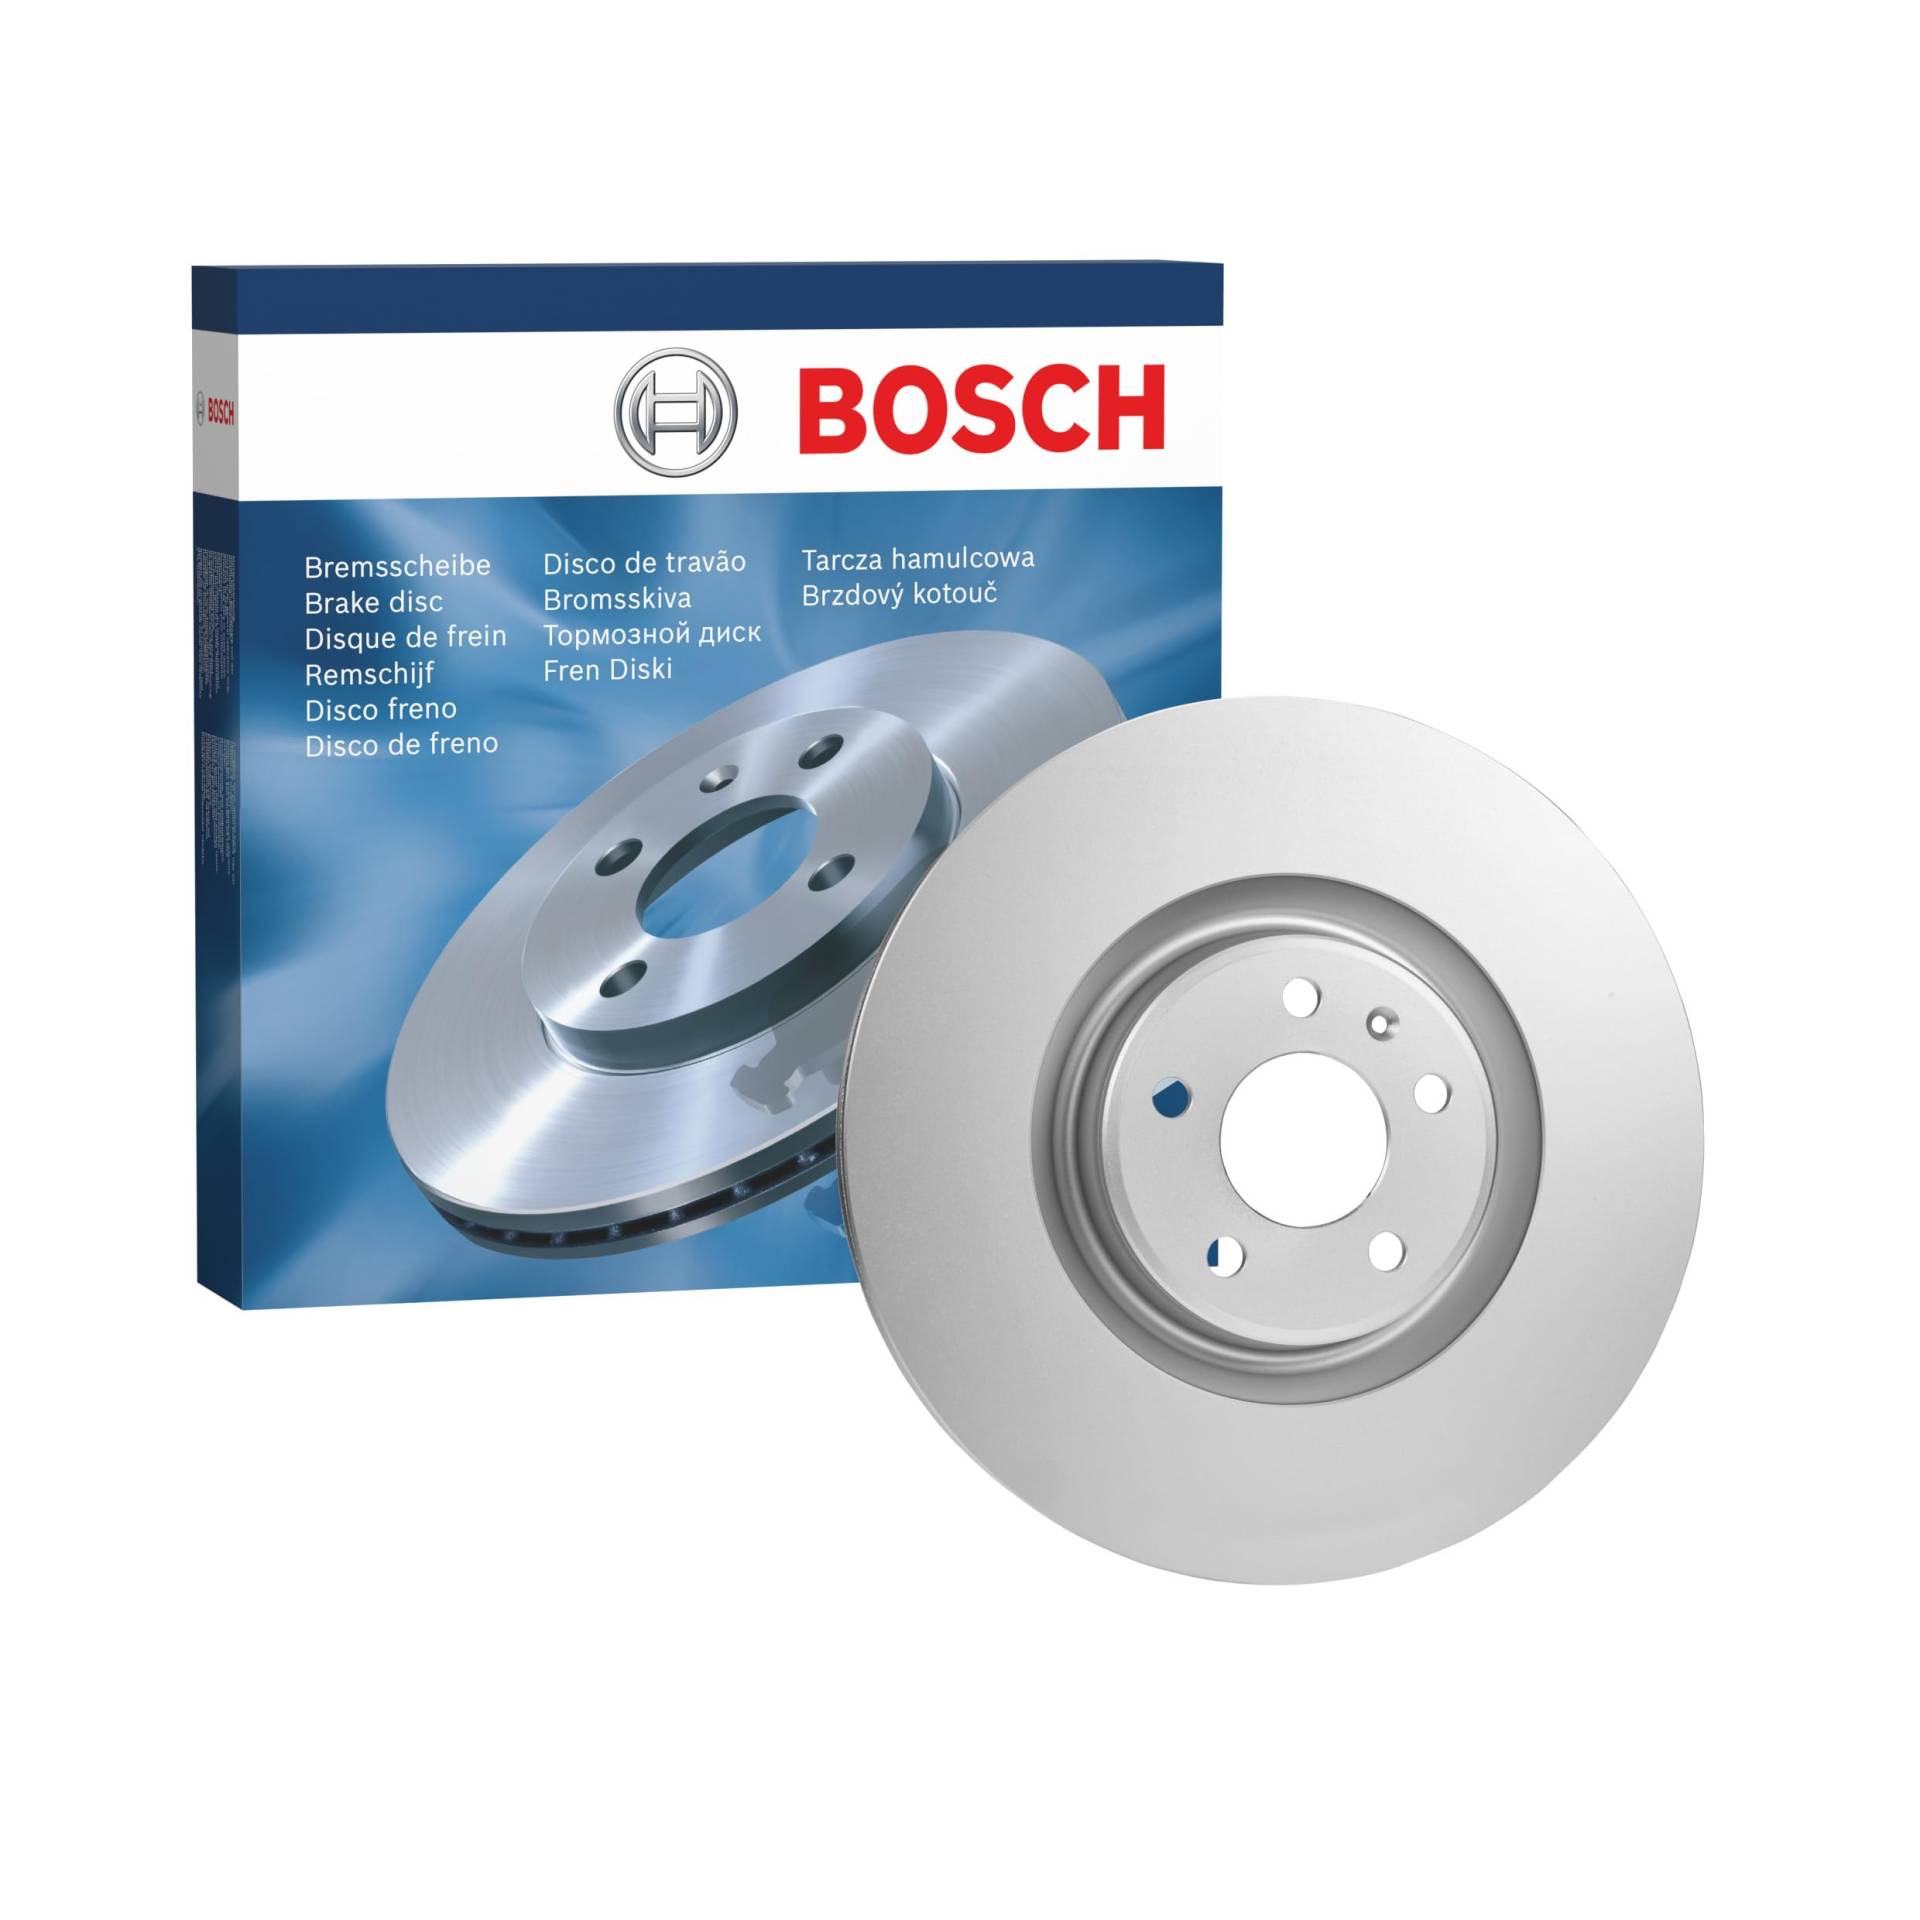 Bosch BD1578 Bremsscheiben - Vorderachse - ECE-R90 Zertifizierung - eine Bremsscheibe von Bosch Automotive